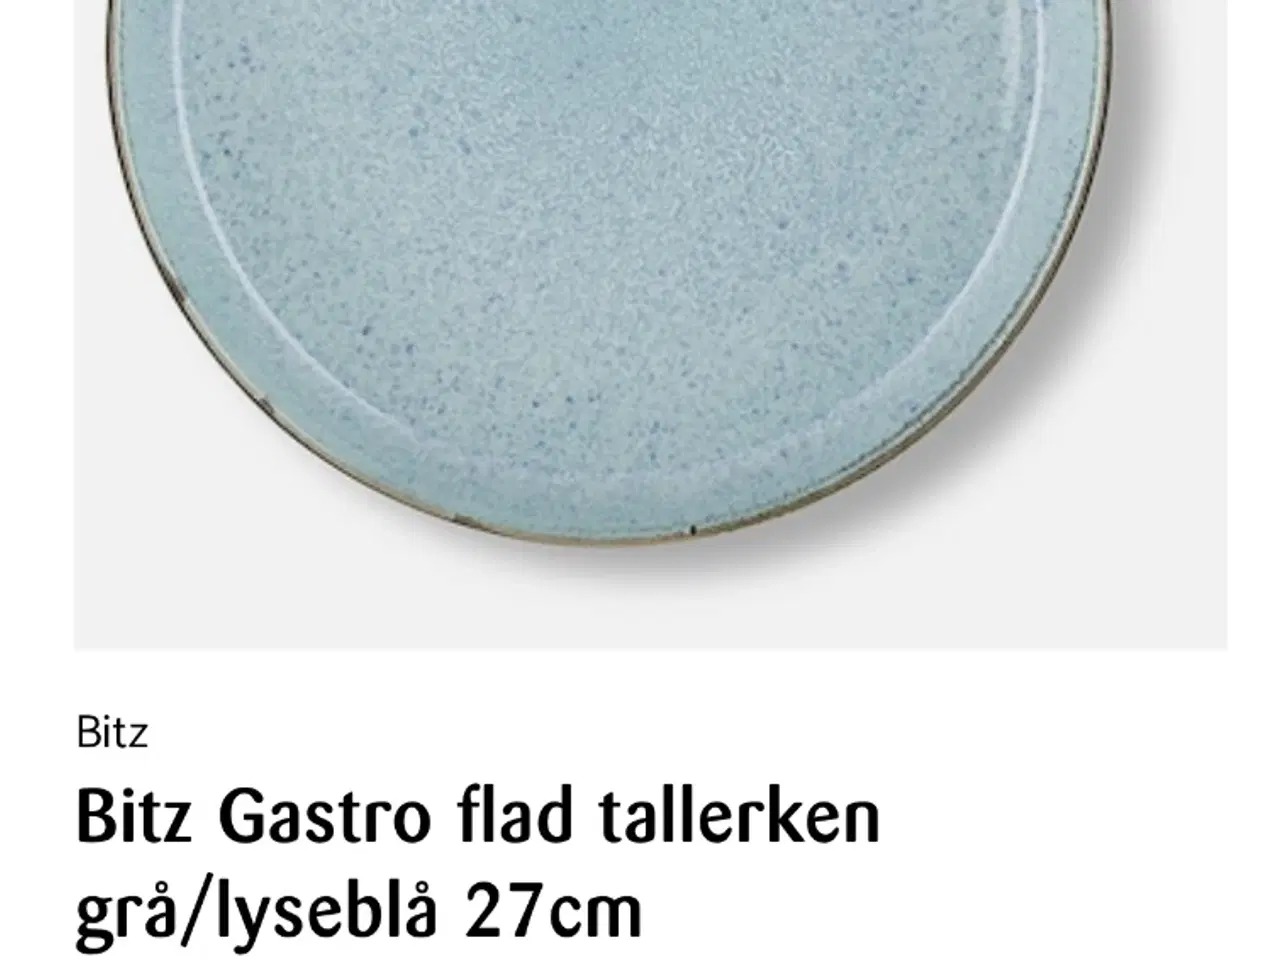 Billede 4 - Bitz gastro flad tallerken grå/lyseblå 27 cm